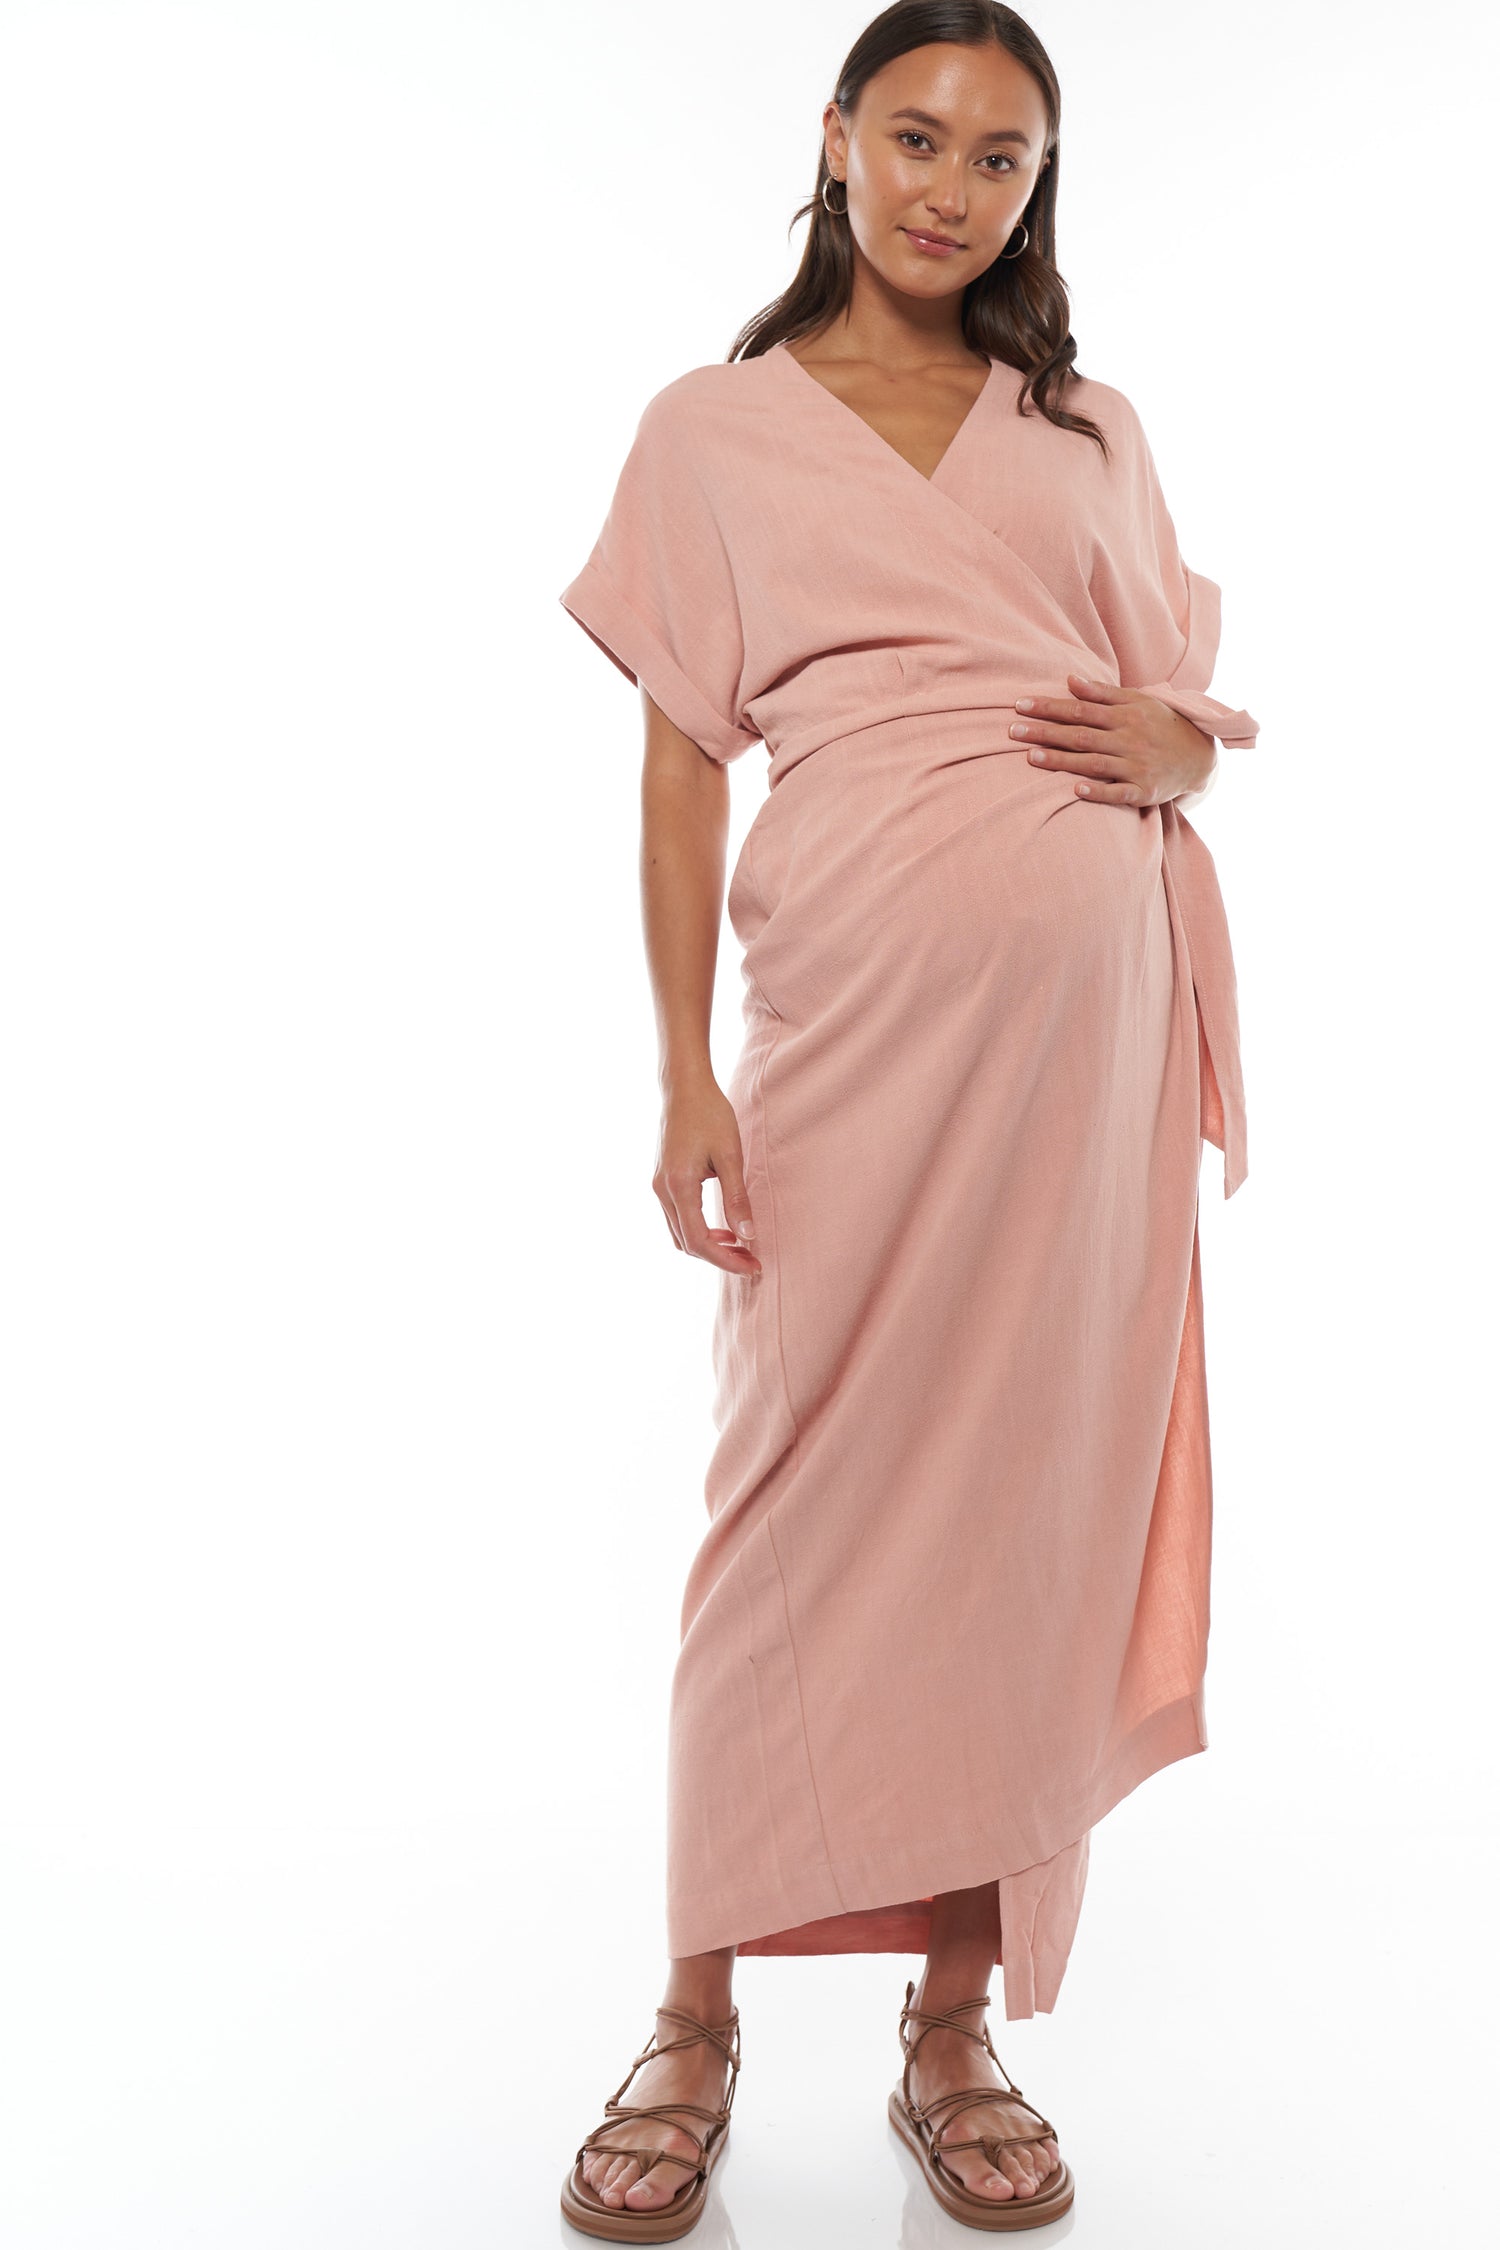 Baby Shower Maternity Dresses